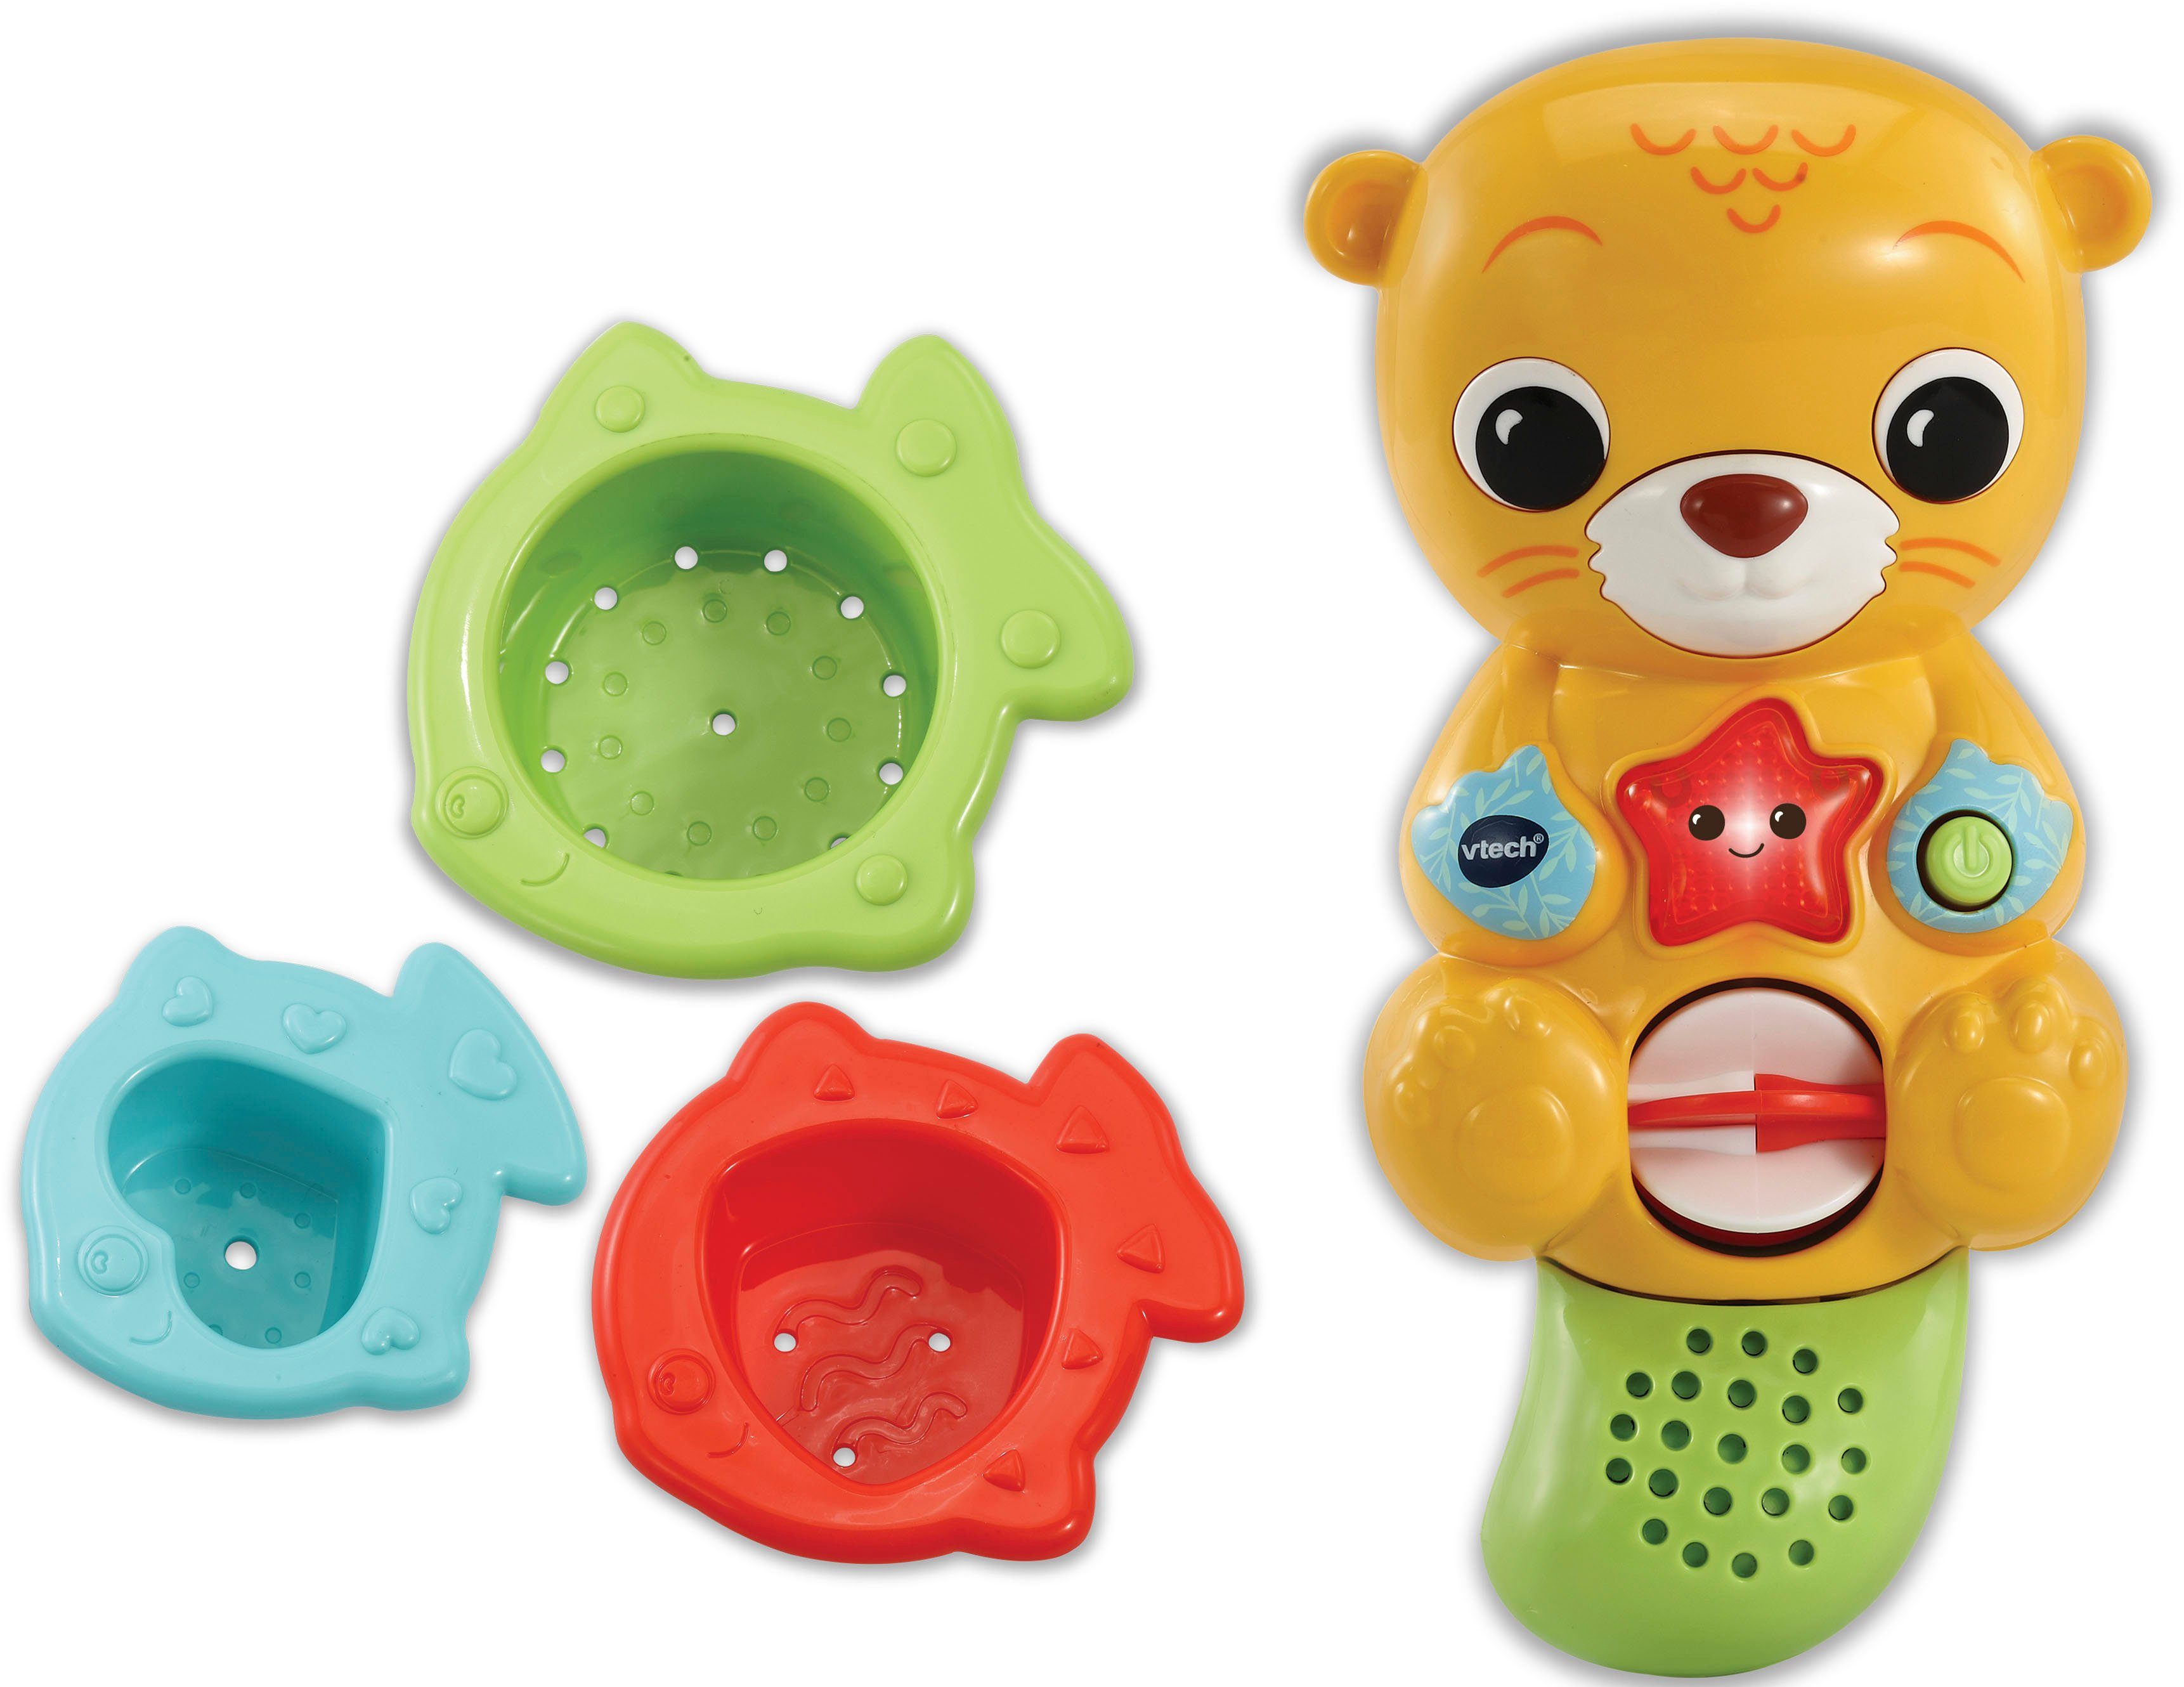 und Badespielzeug mit Baby, Vtech Licht Otter, Badespaß Vtech® Sound